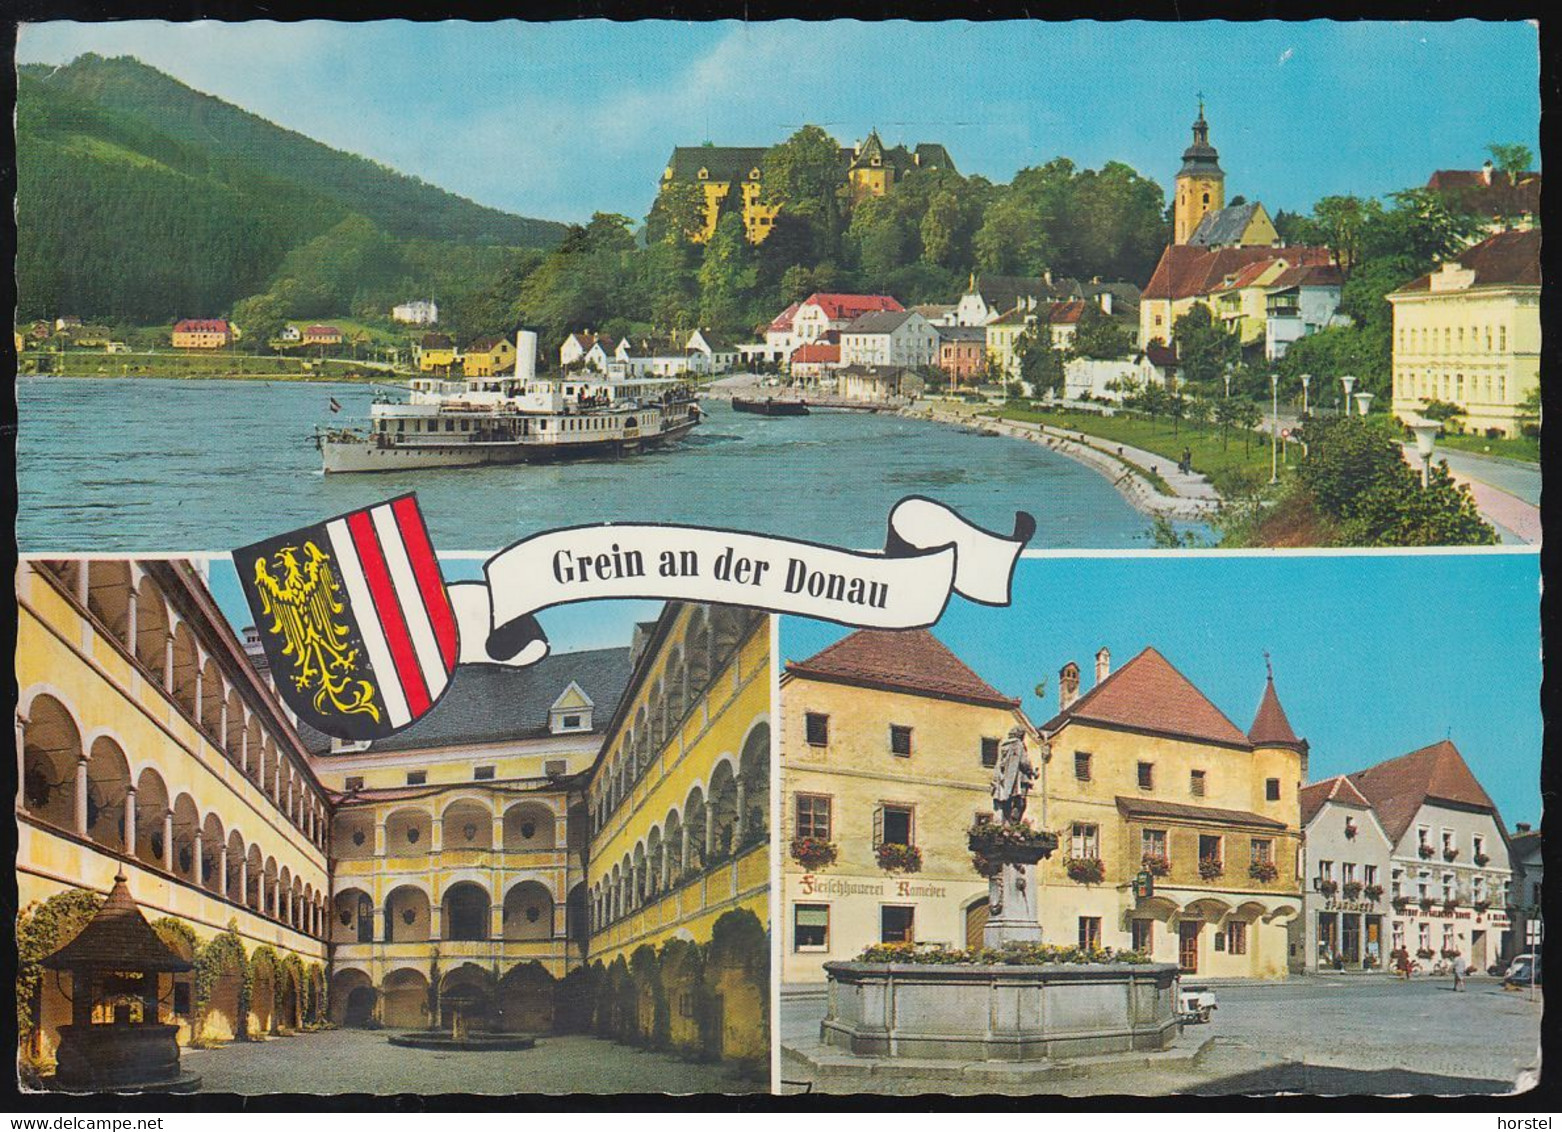 Austria - 4360 Grein An Der Donau - Hauptplatz - Dampfer - Schloßhof - 2x Nice Stamps - Grein